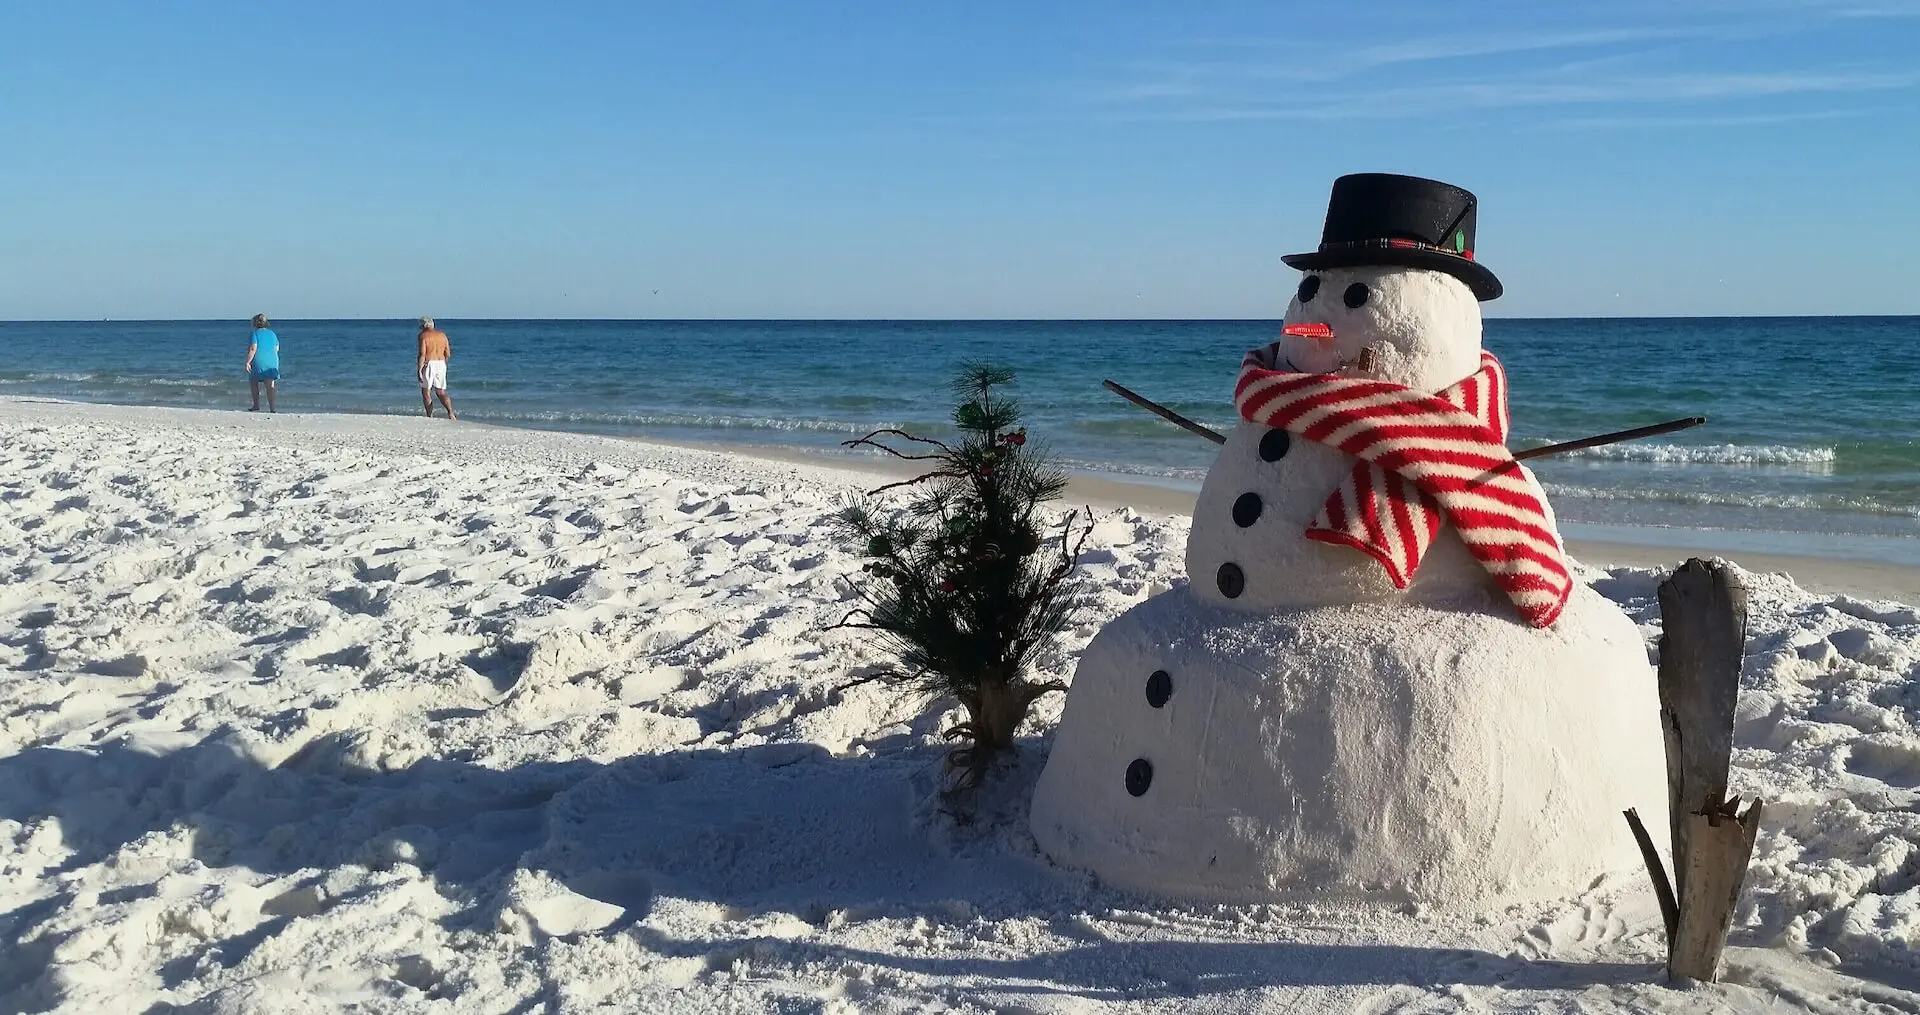 A festive "snowman" on the beach